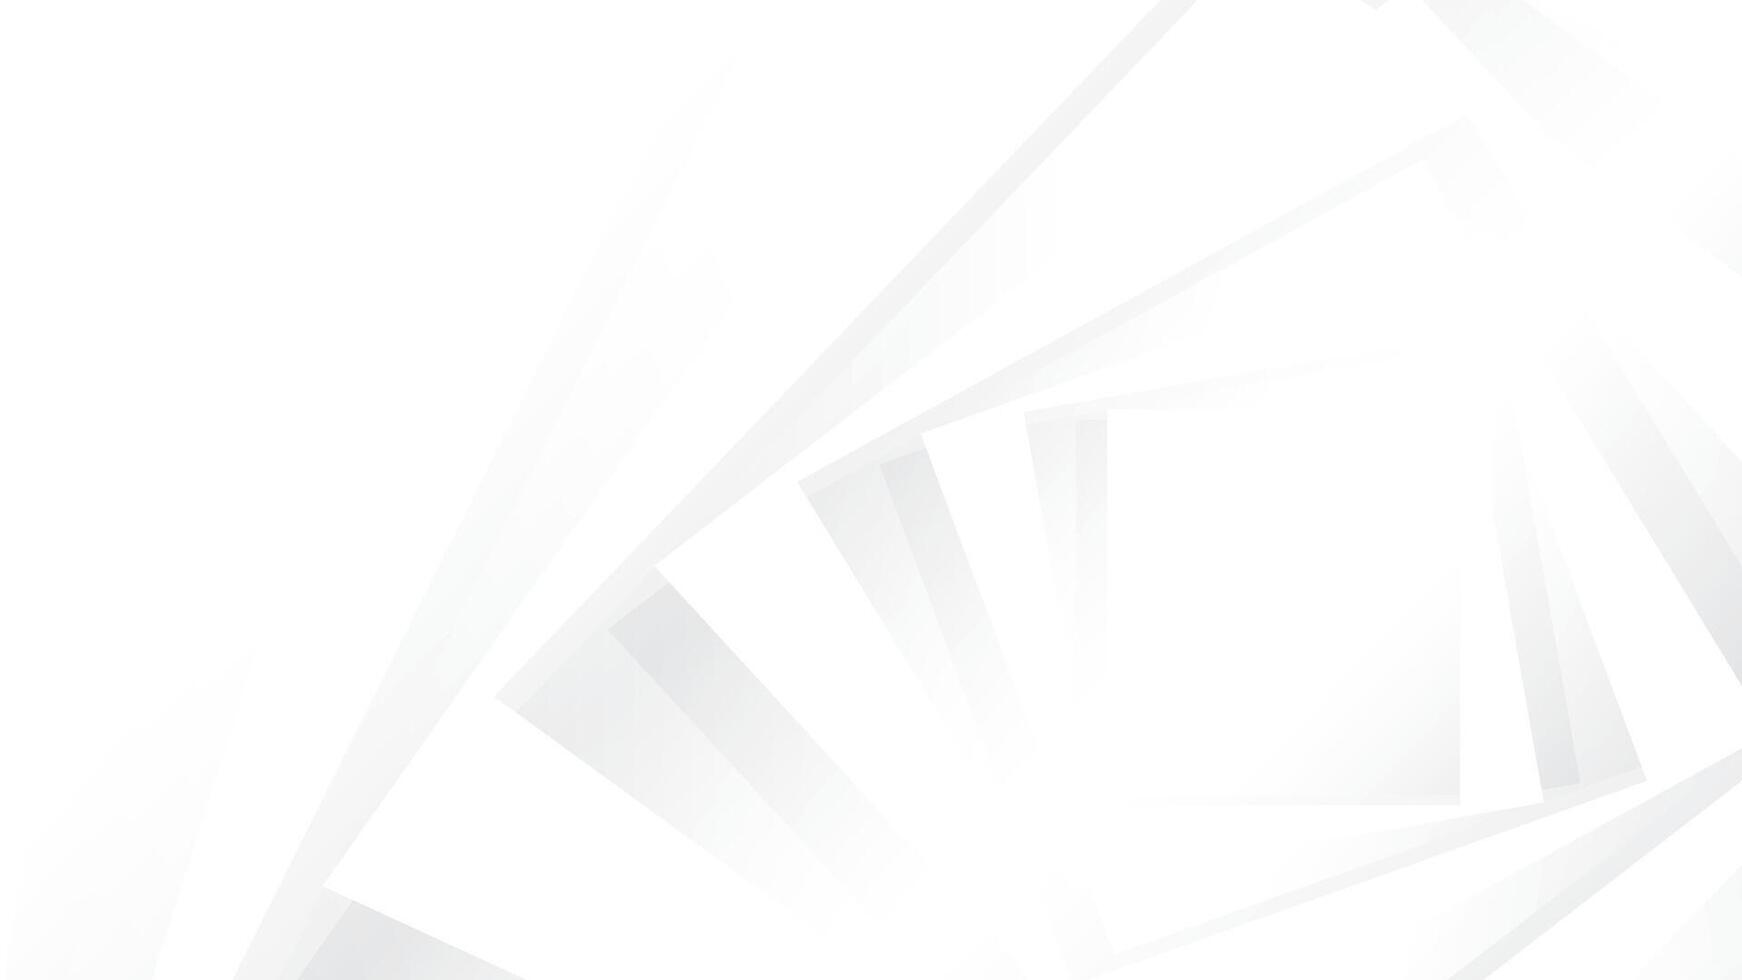 abstrakt vit och grå Färg, modern design Ränder bakgrund med geometrisk form. vektor illustration.